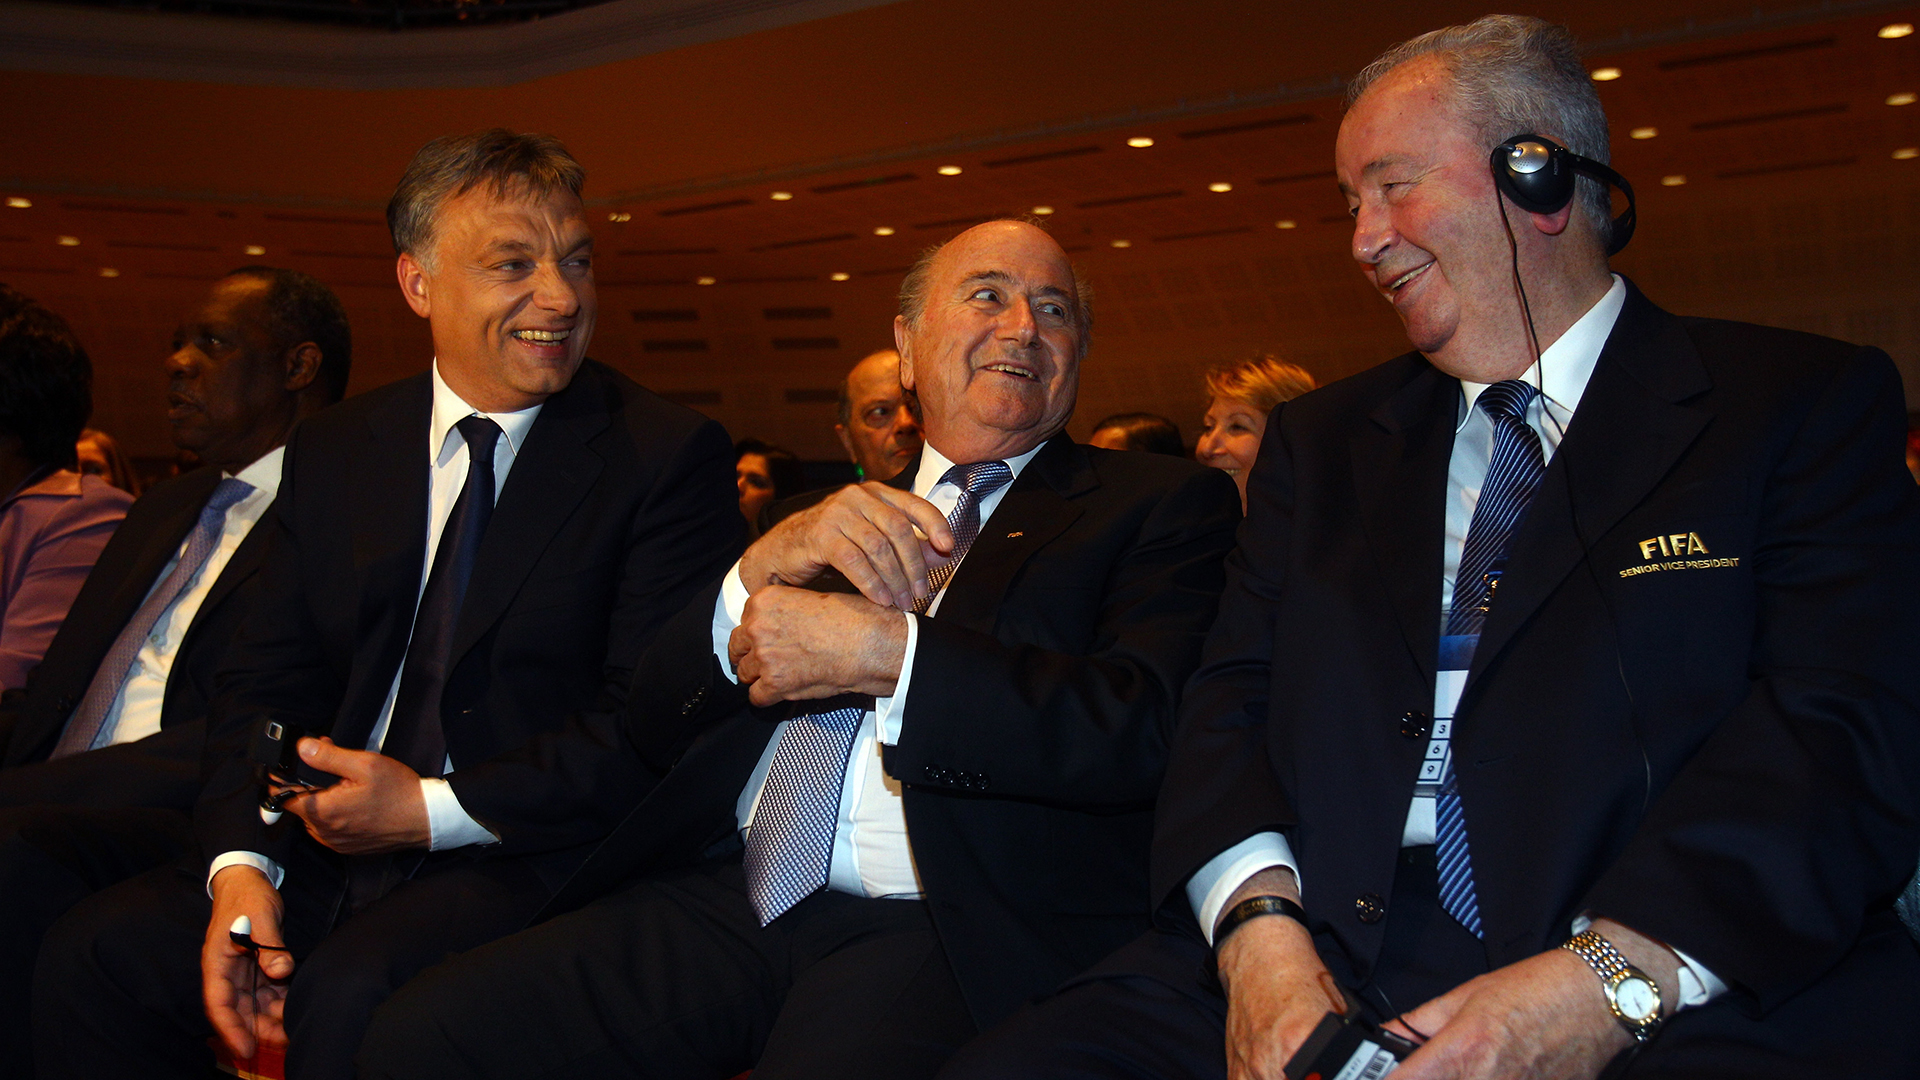 Julio Grondona y Joseph Blatter durante un evento de la FIFA en Hungría en el 2012 (Foto: Getty Images)